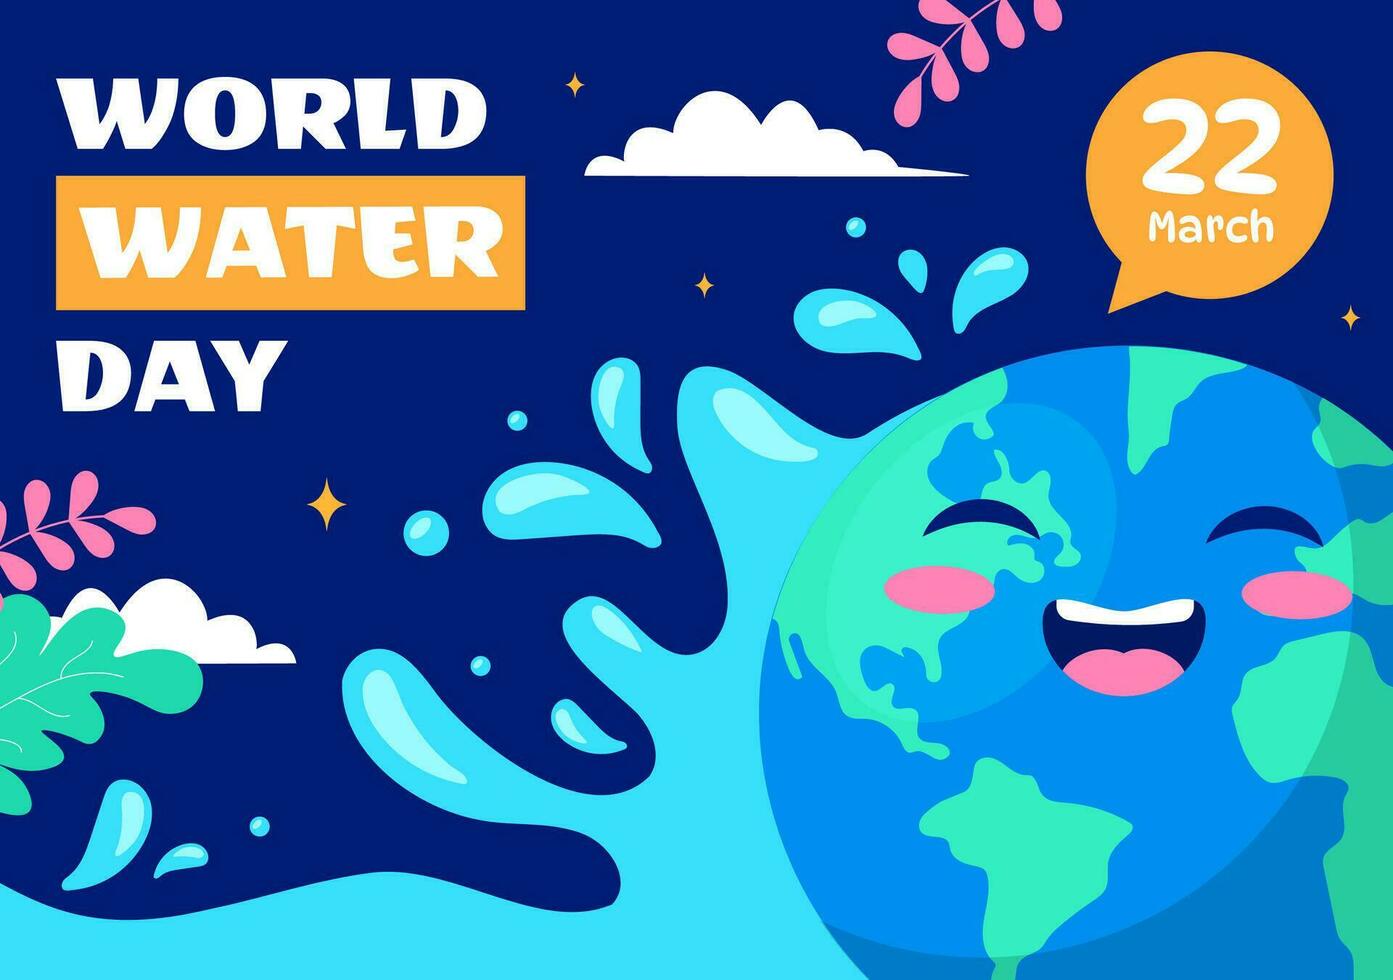 Welt Wasser Tag Vektor Illustration auf 22 März mit Wassertropfen und Wasserhähne zu speichern Erde und Verwaltung von frisches Wasser im Hintergrund Design